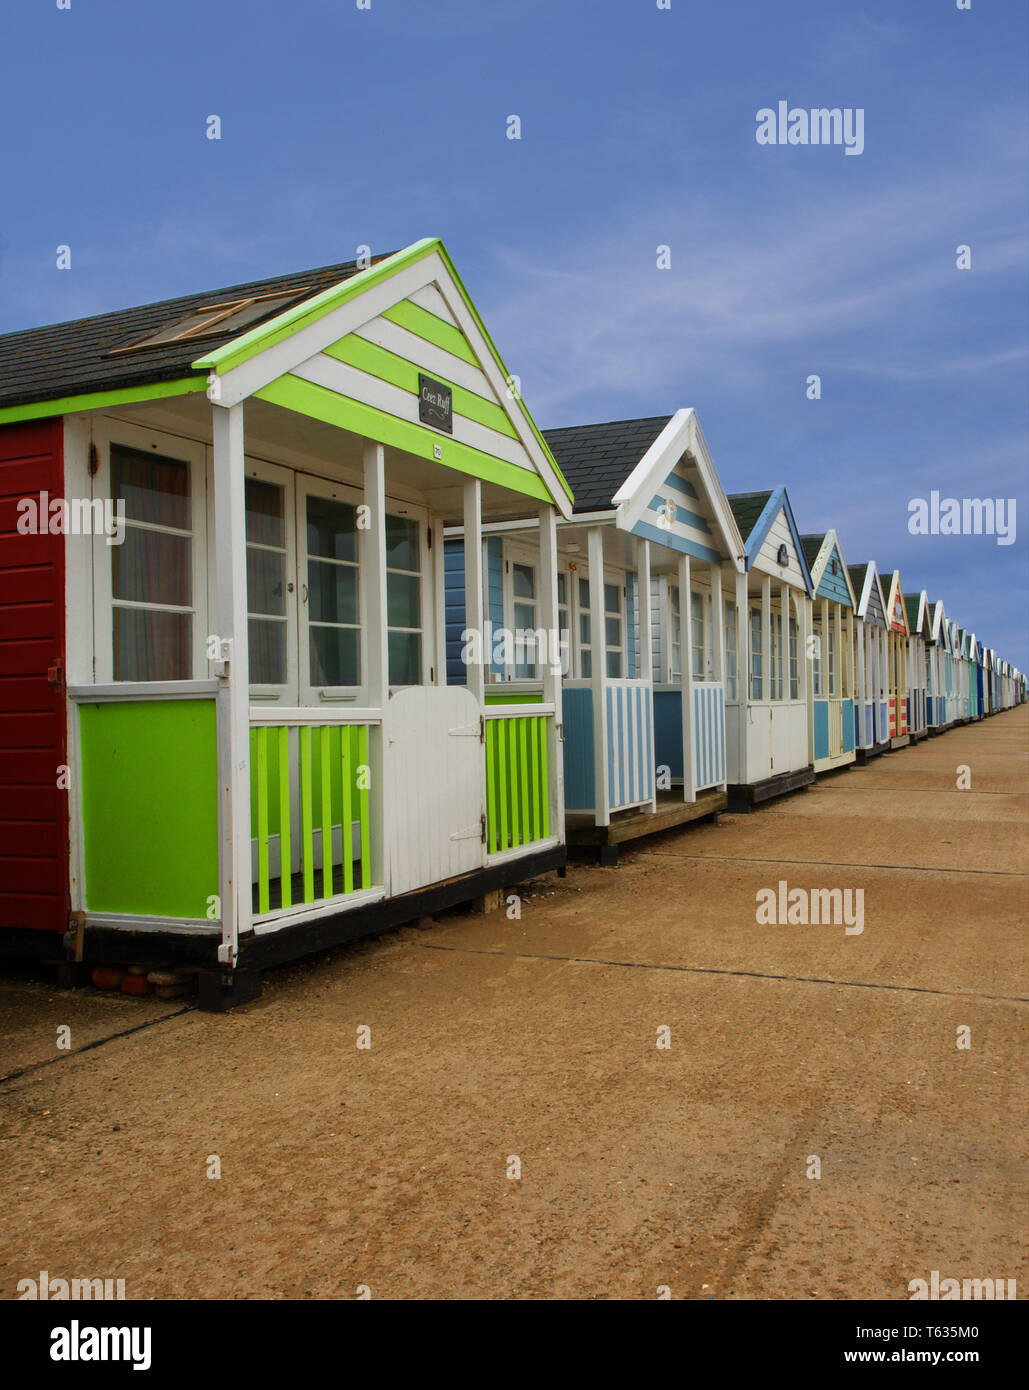 Rangée de cabines colorées dans la région de East Coast Town Southwold, Suffolk, UK Banque D'Images